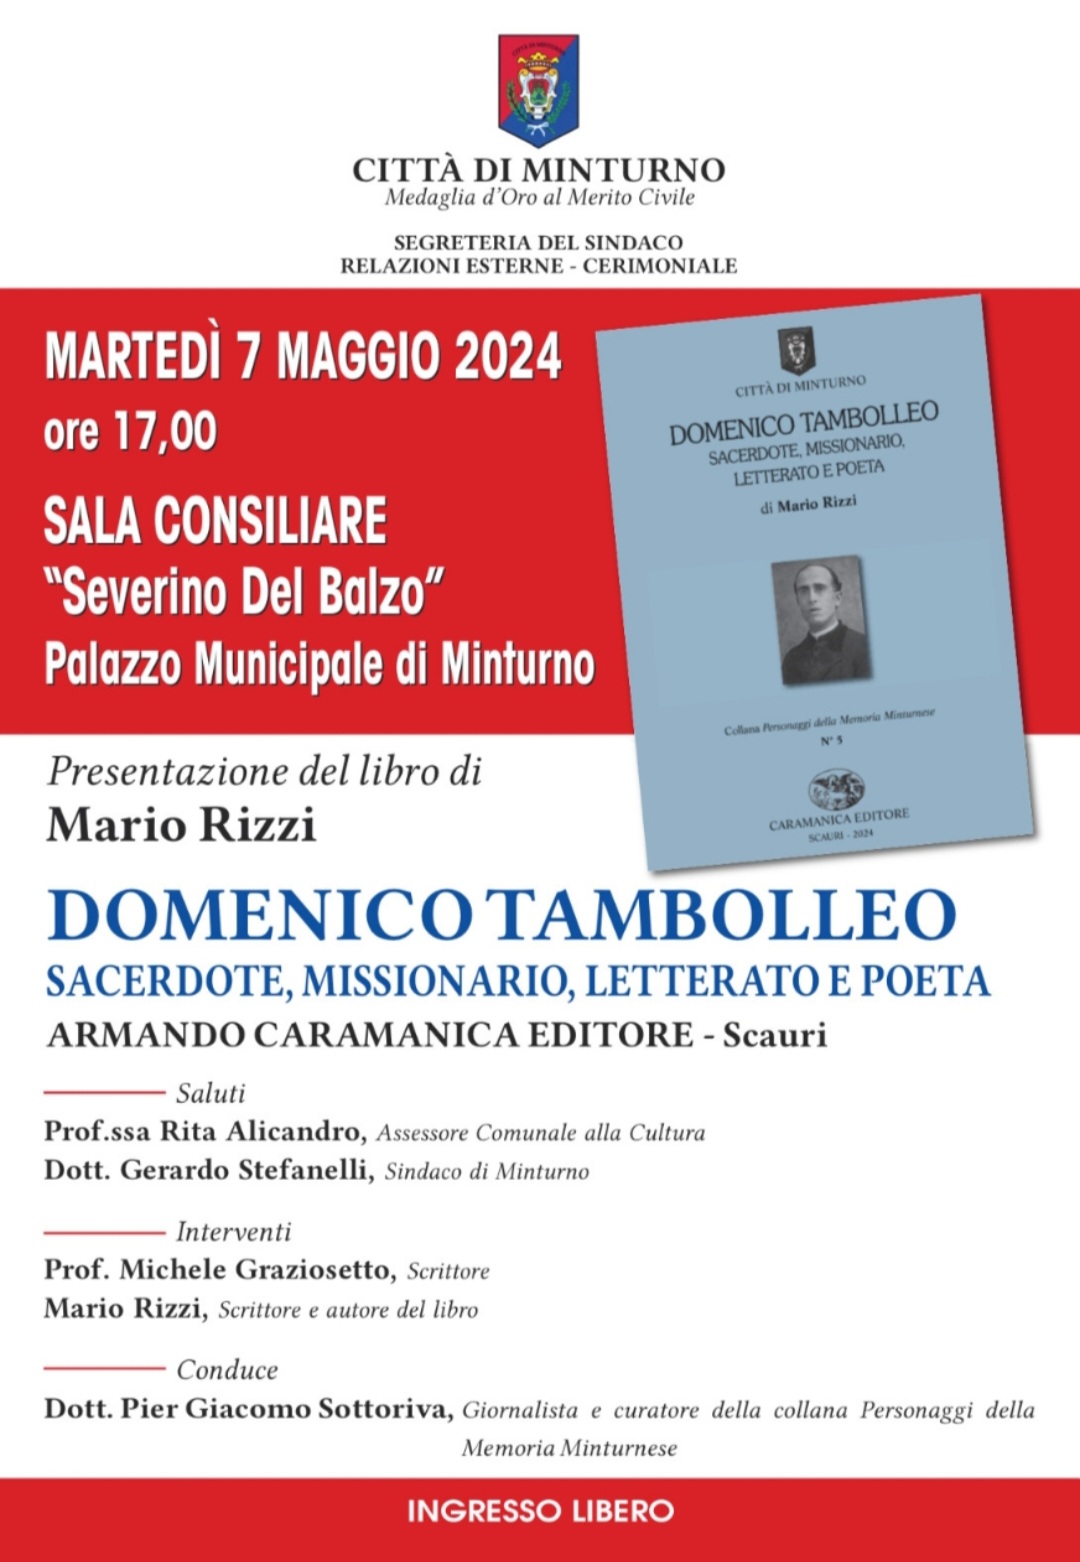 Presentazione del libro "Domenico Tambolleo - Sacerdote, missionario, letterato e poeta" di Mario Rizzi – martedì 7 maggio 2024 ore 17 - Sala Consiliare di Minturno